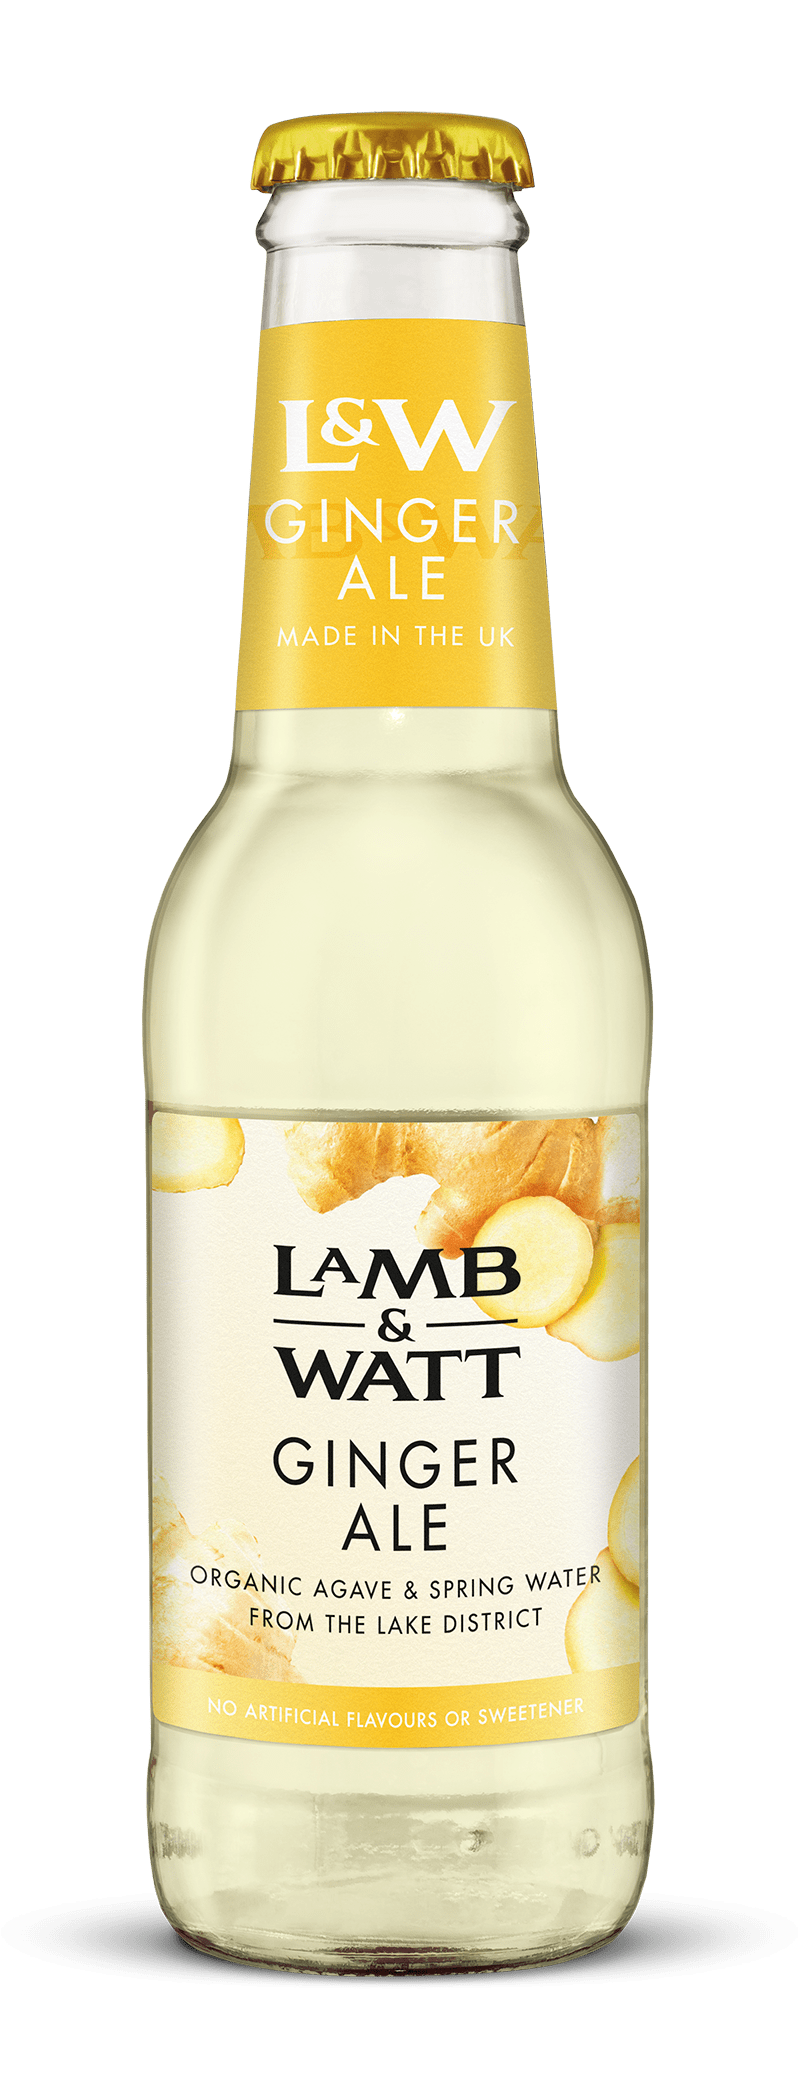 Lamb & Watt Ginger Ale